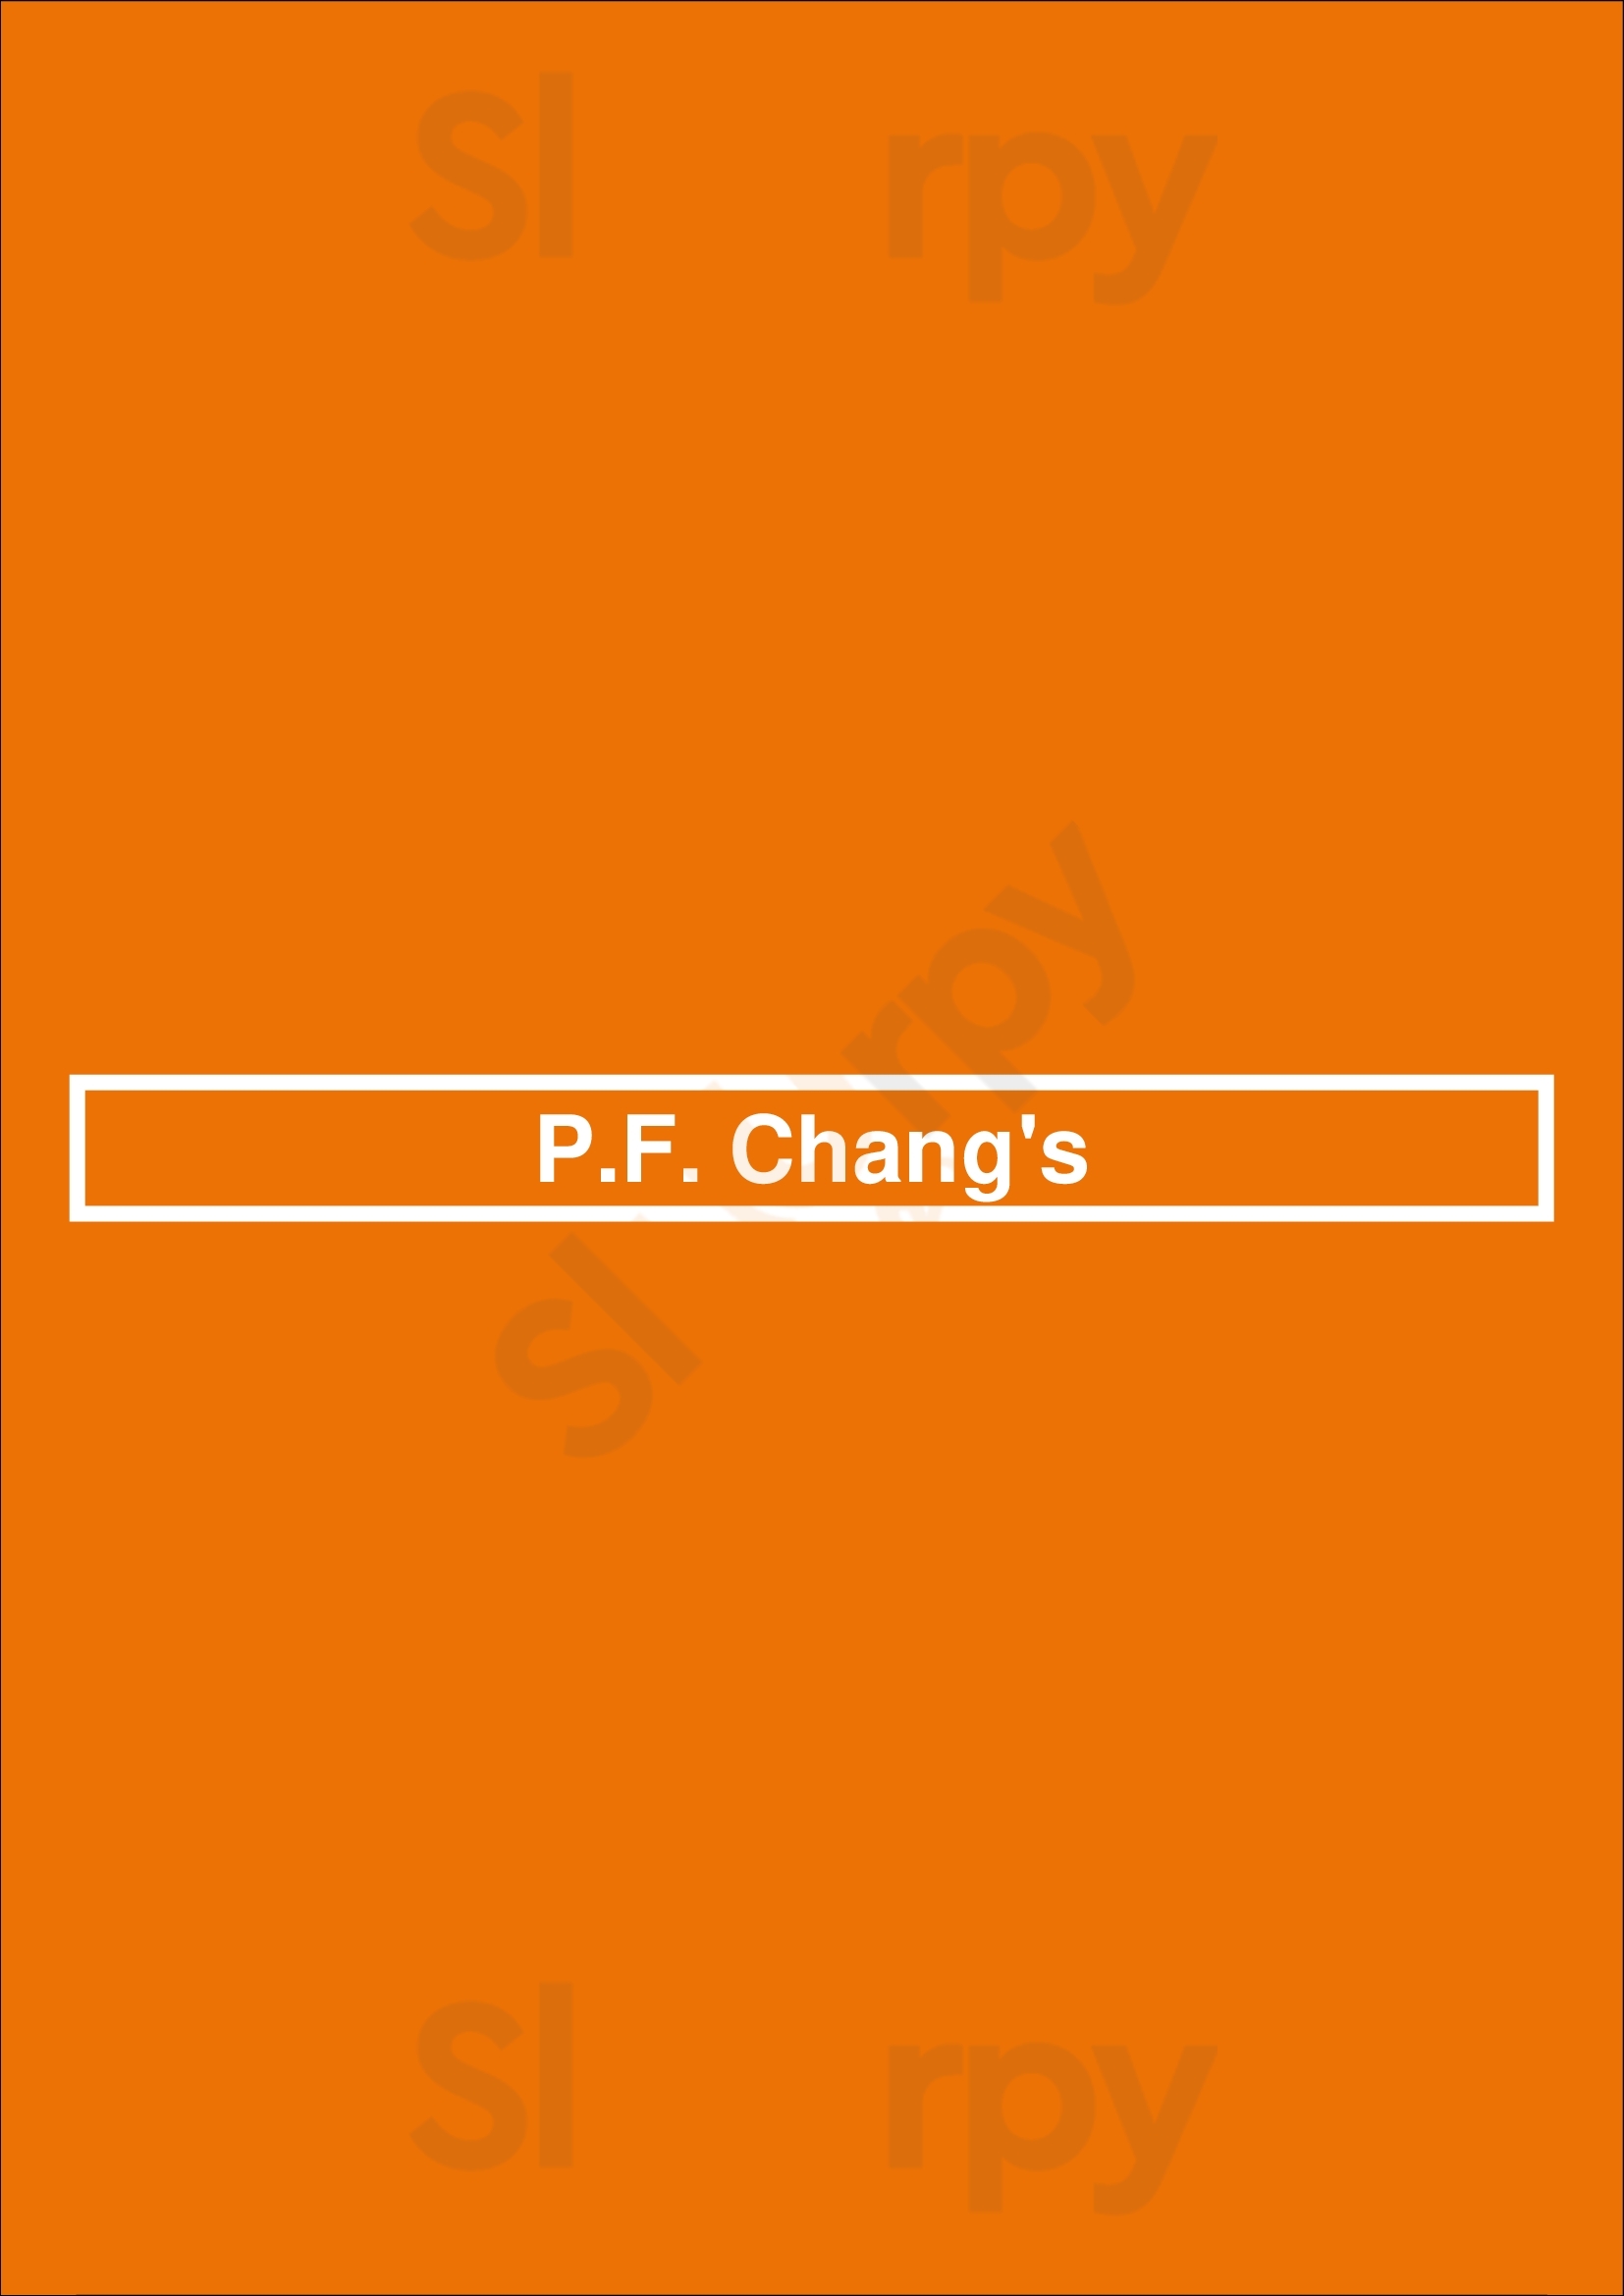 P.f. Chang's Boston Menu - 1